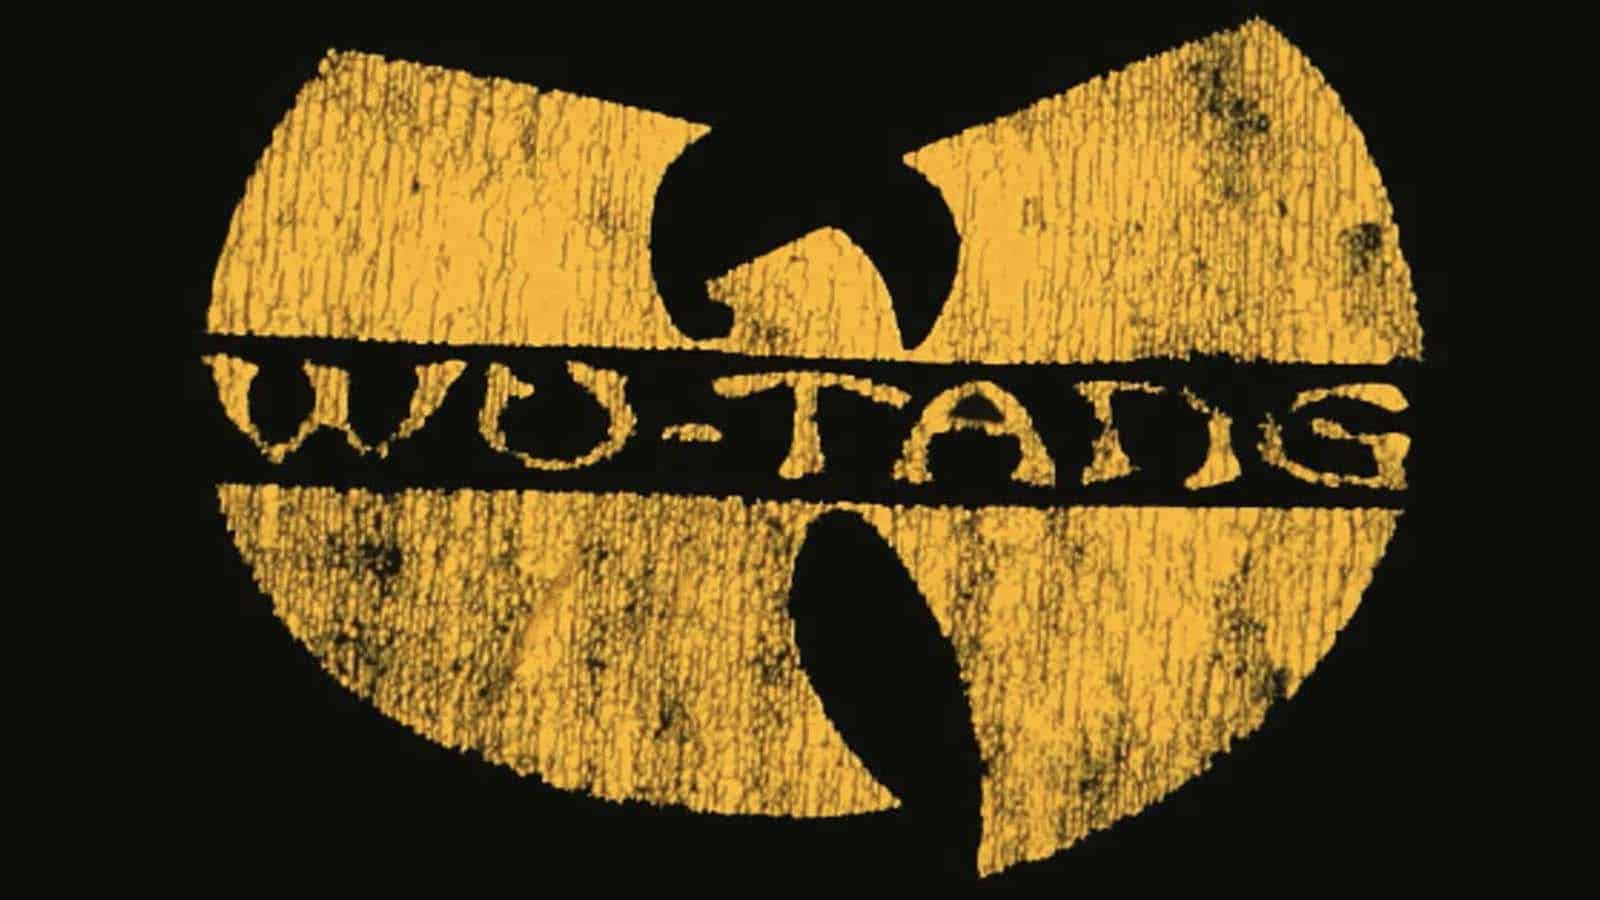 Wu-Tang Clan’s iconic logo